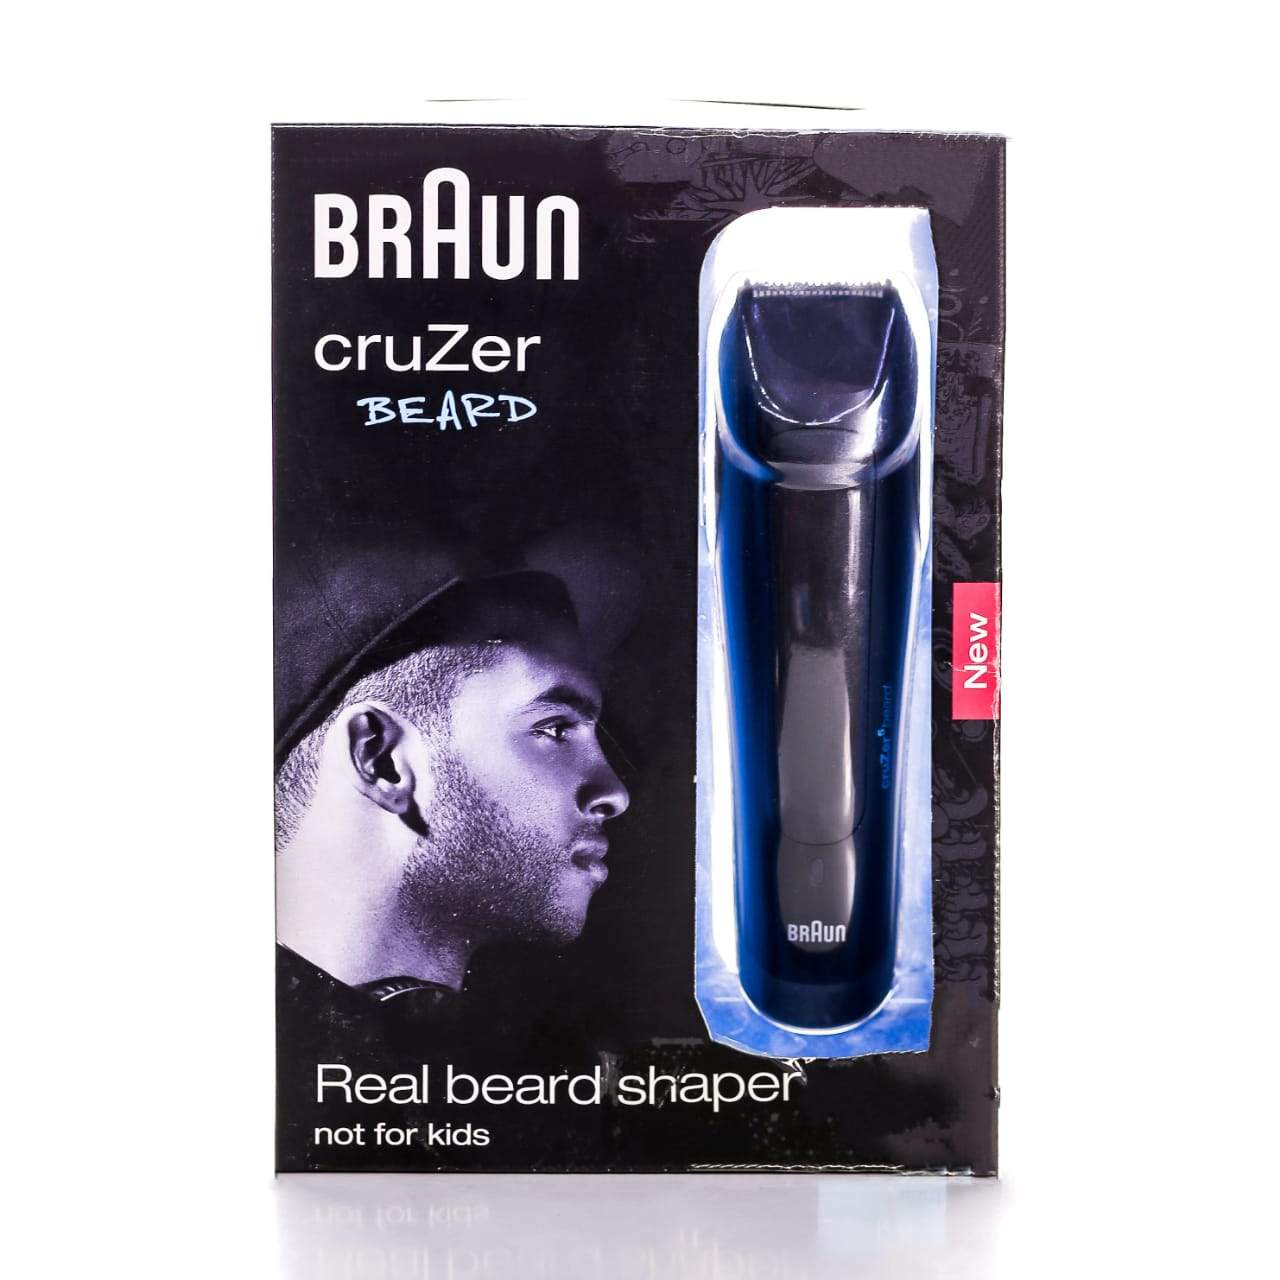 BRAUN CRUZER 5 BEARD HAIR PC